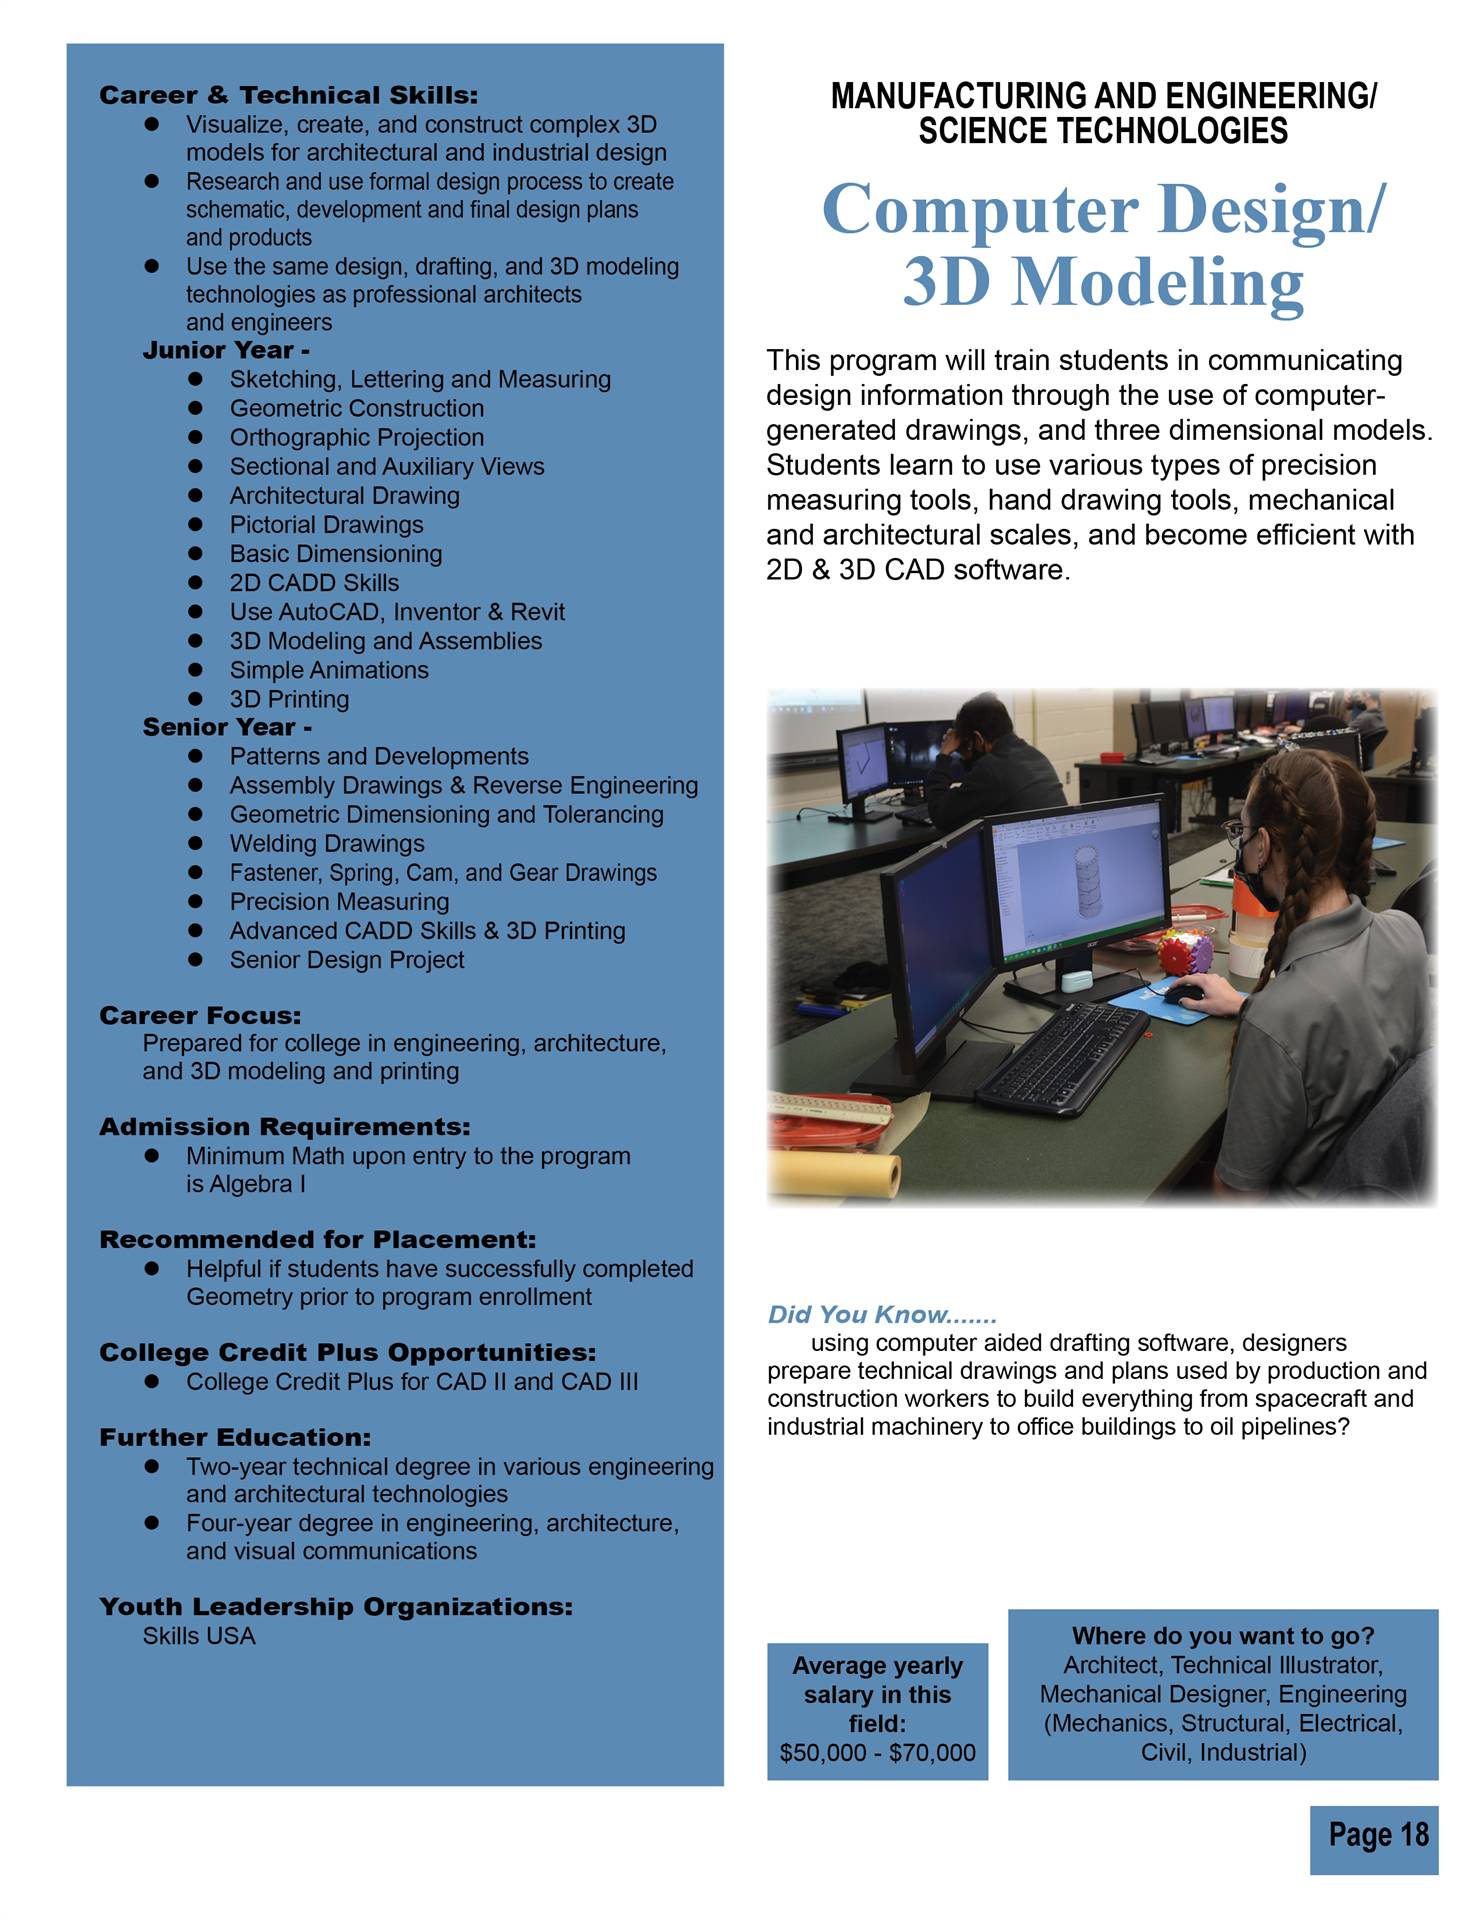 Computer Design/3D Modeling